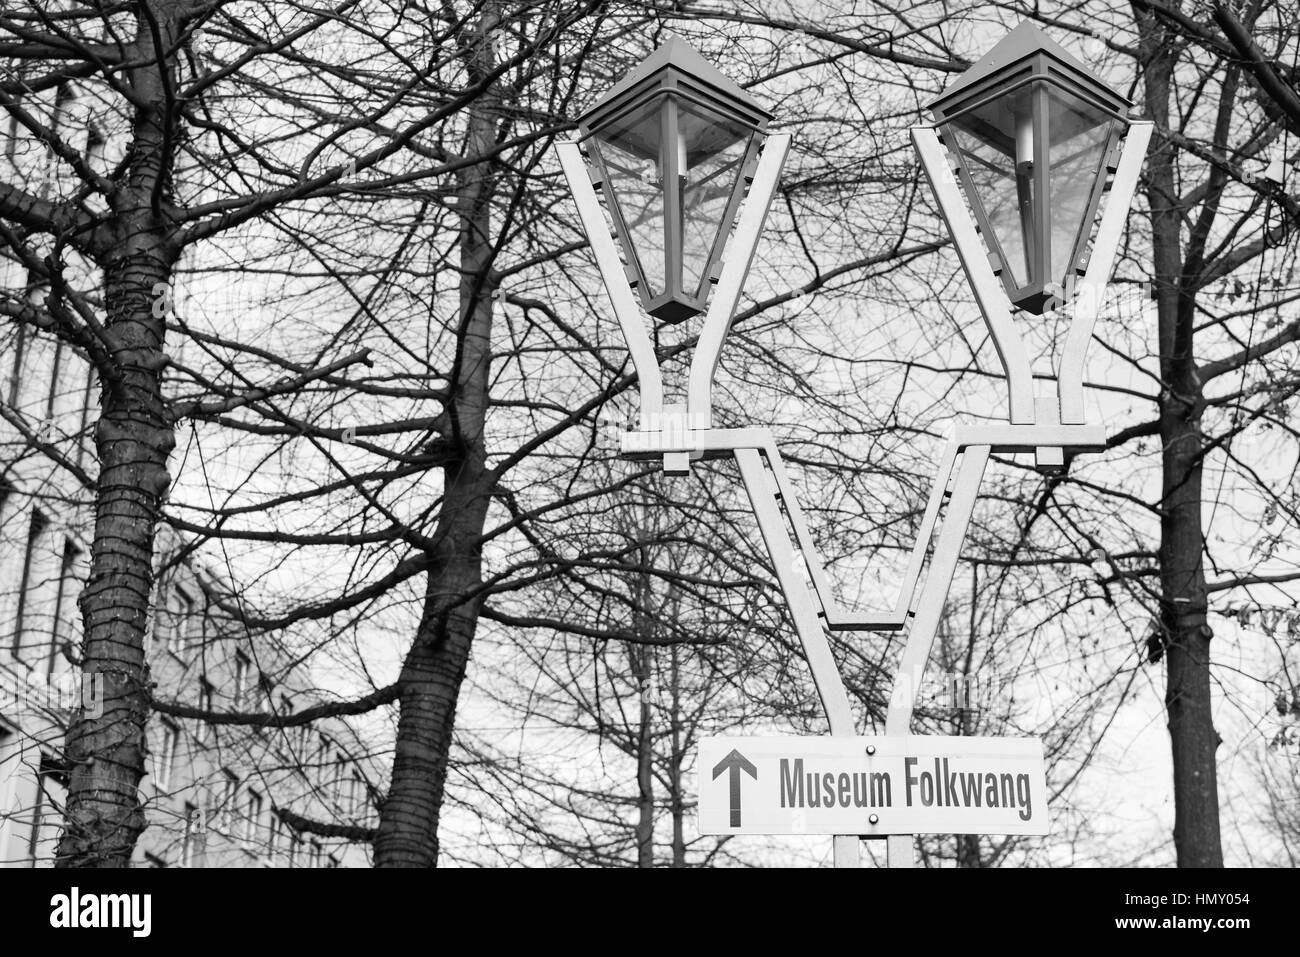 ESSEN, Deutschland - 25. Januar 2017: Ein Zeichen führt interessierte Menschen in Richtung der berühmten Folkwang-Museum ist nur wenige Gehminuten von der Rüttenscheider Stern Stockfoto